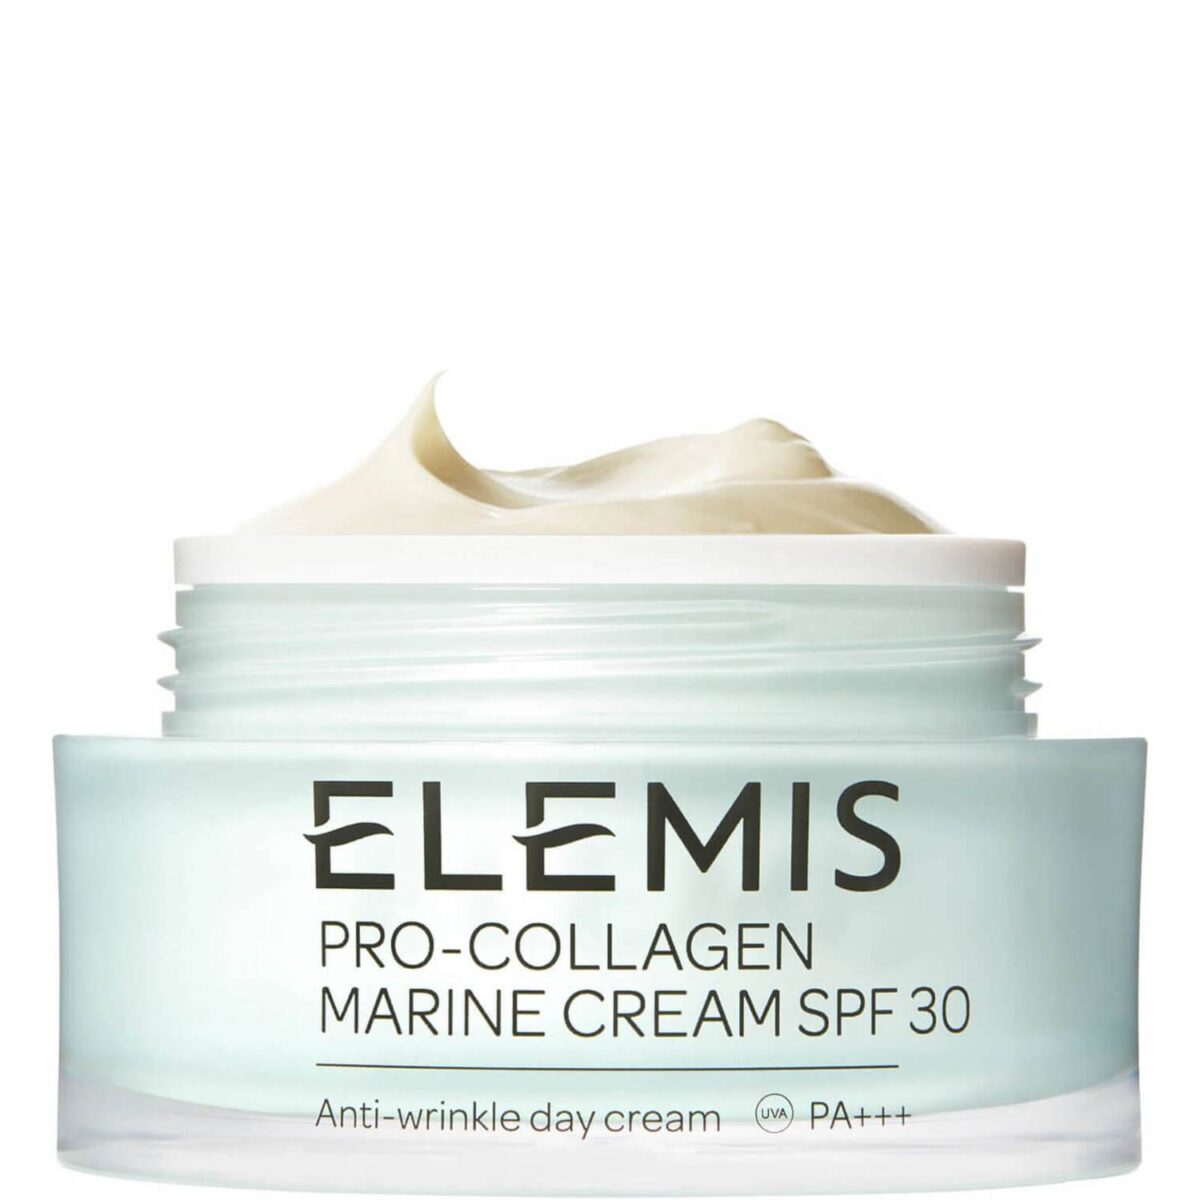 Crema viso Pro-Collagen Marine Cream, Elemis